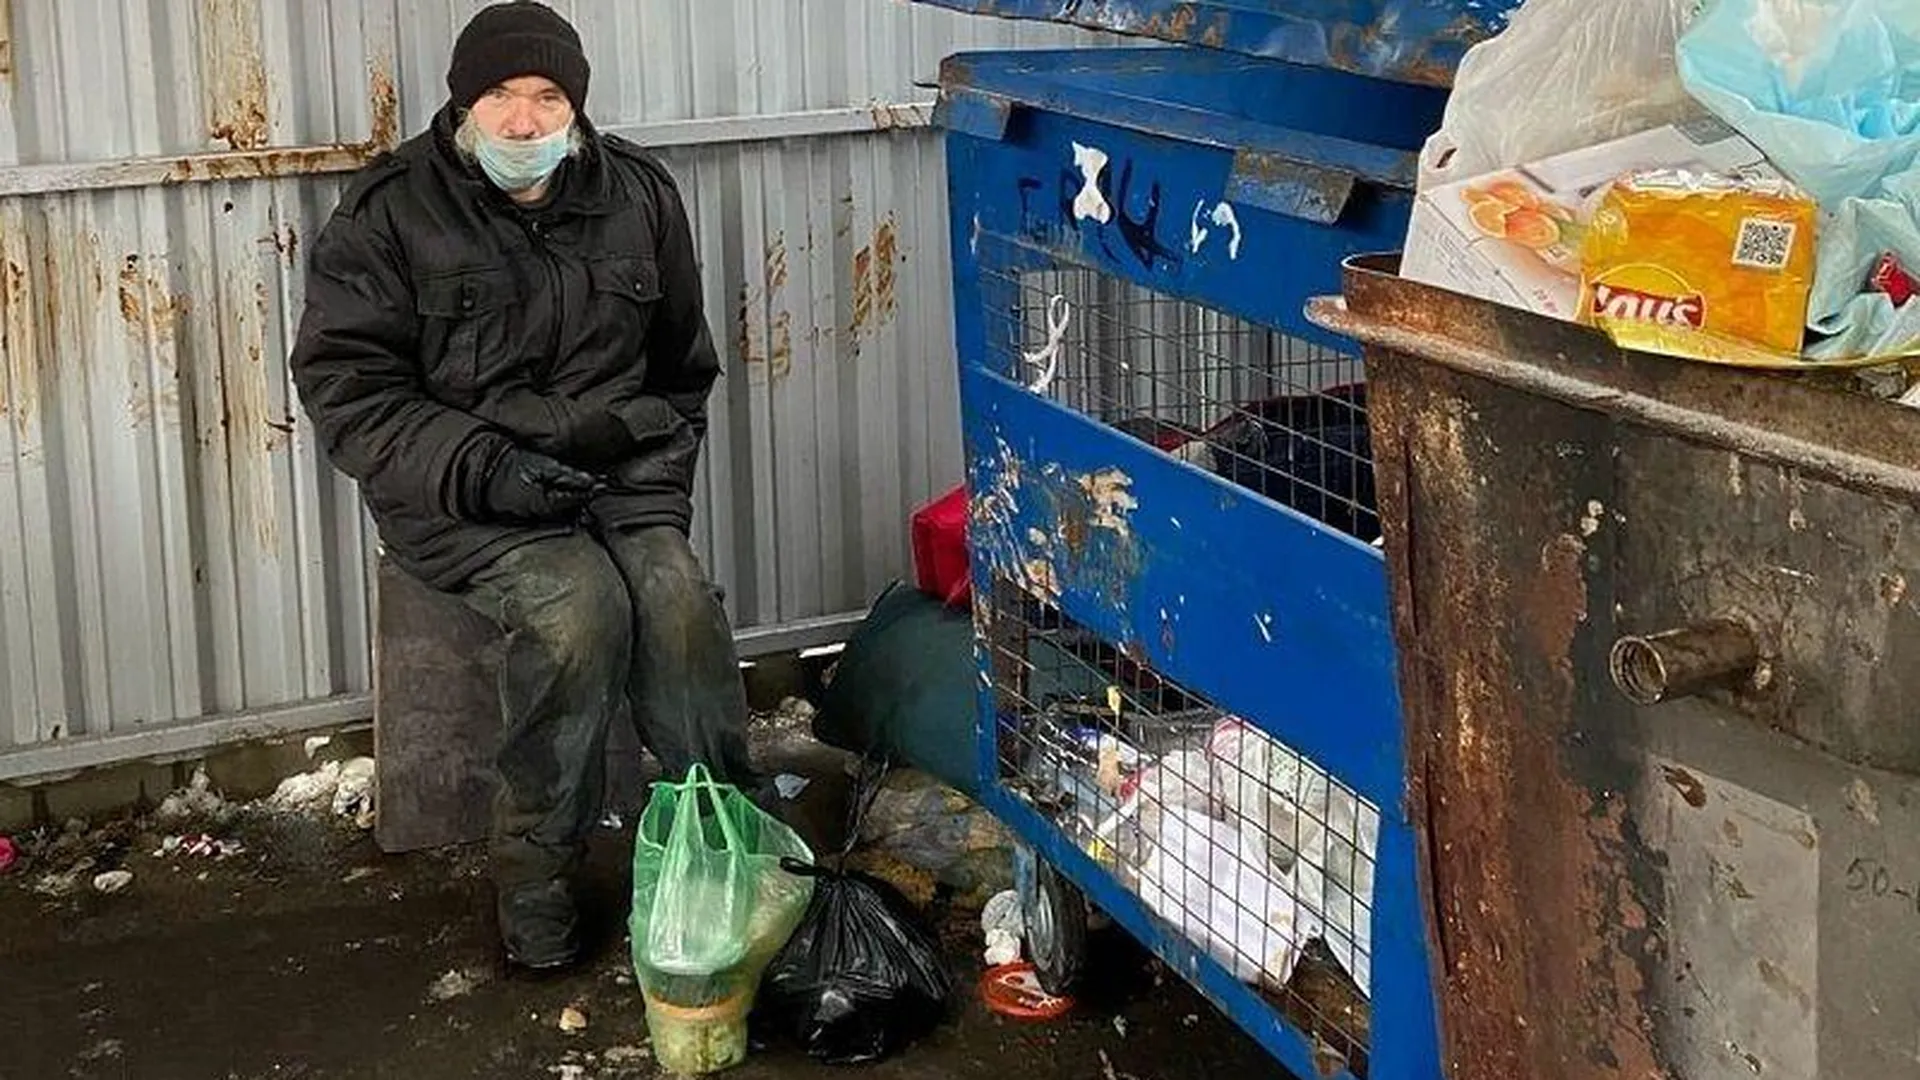 Инвалид, которого выгнали из дома, полтора месяца живет на помойке в Подольске